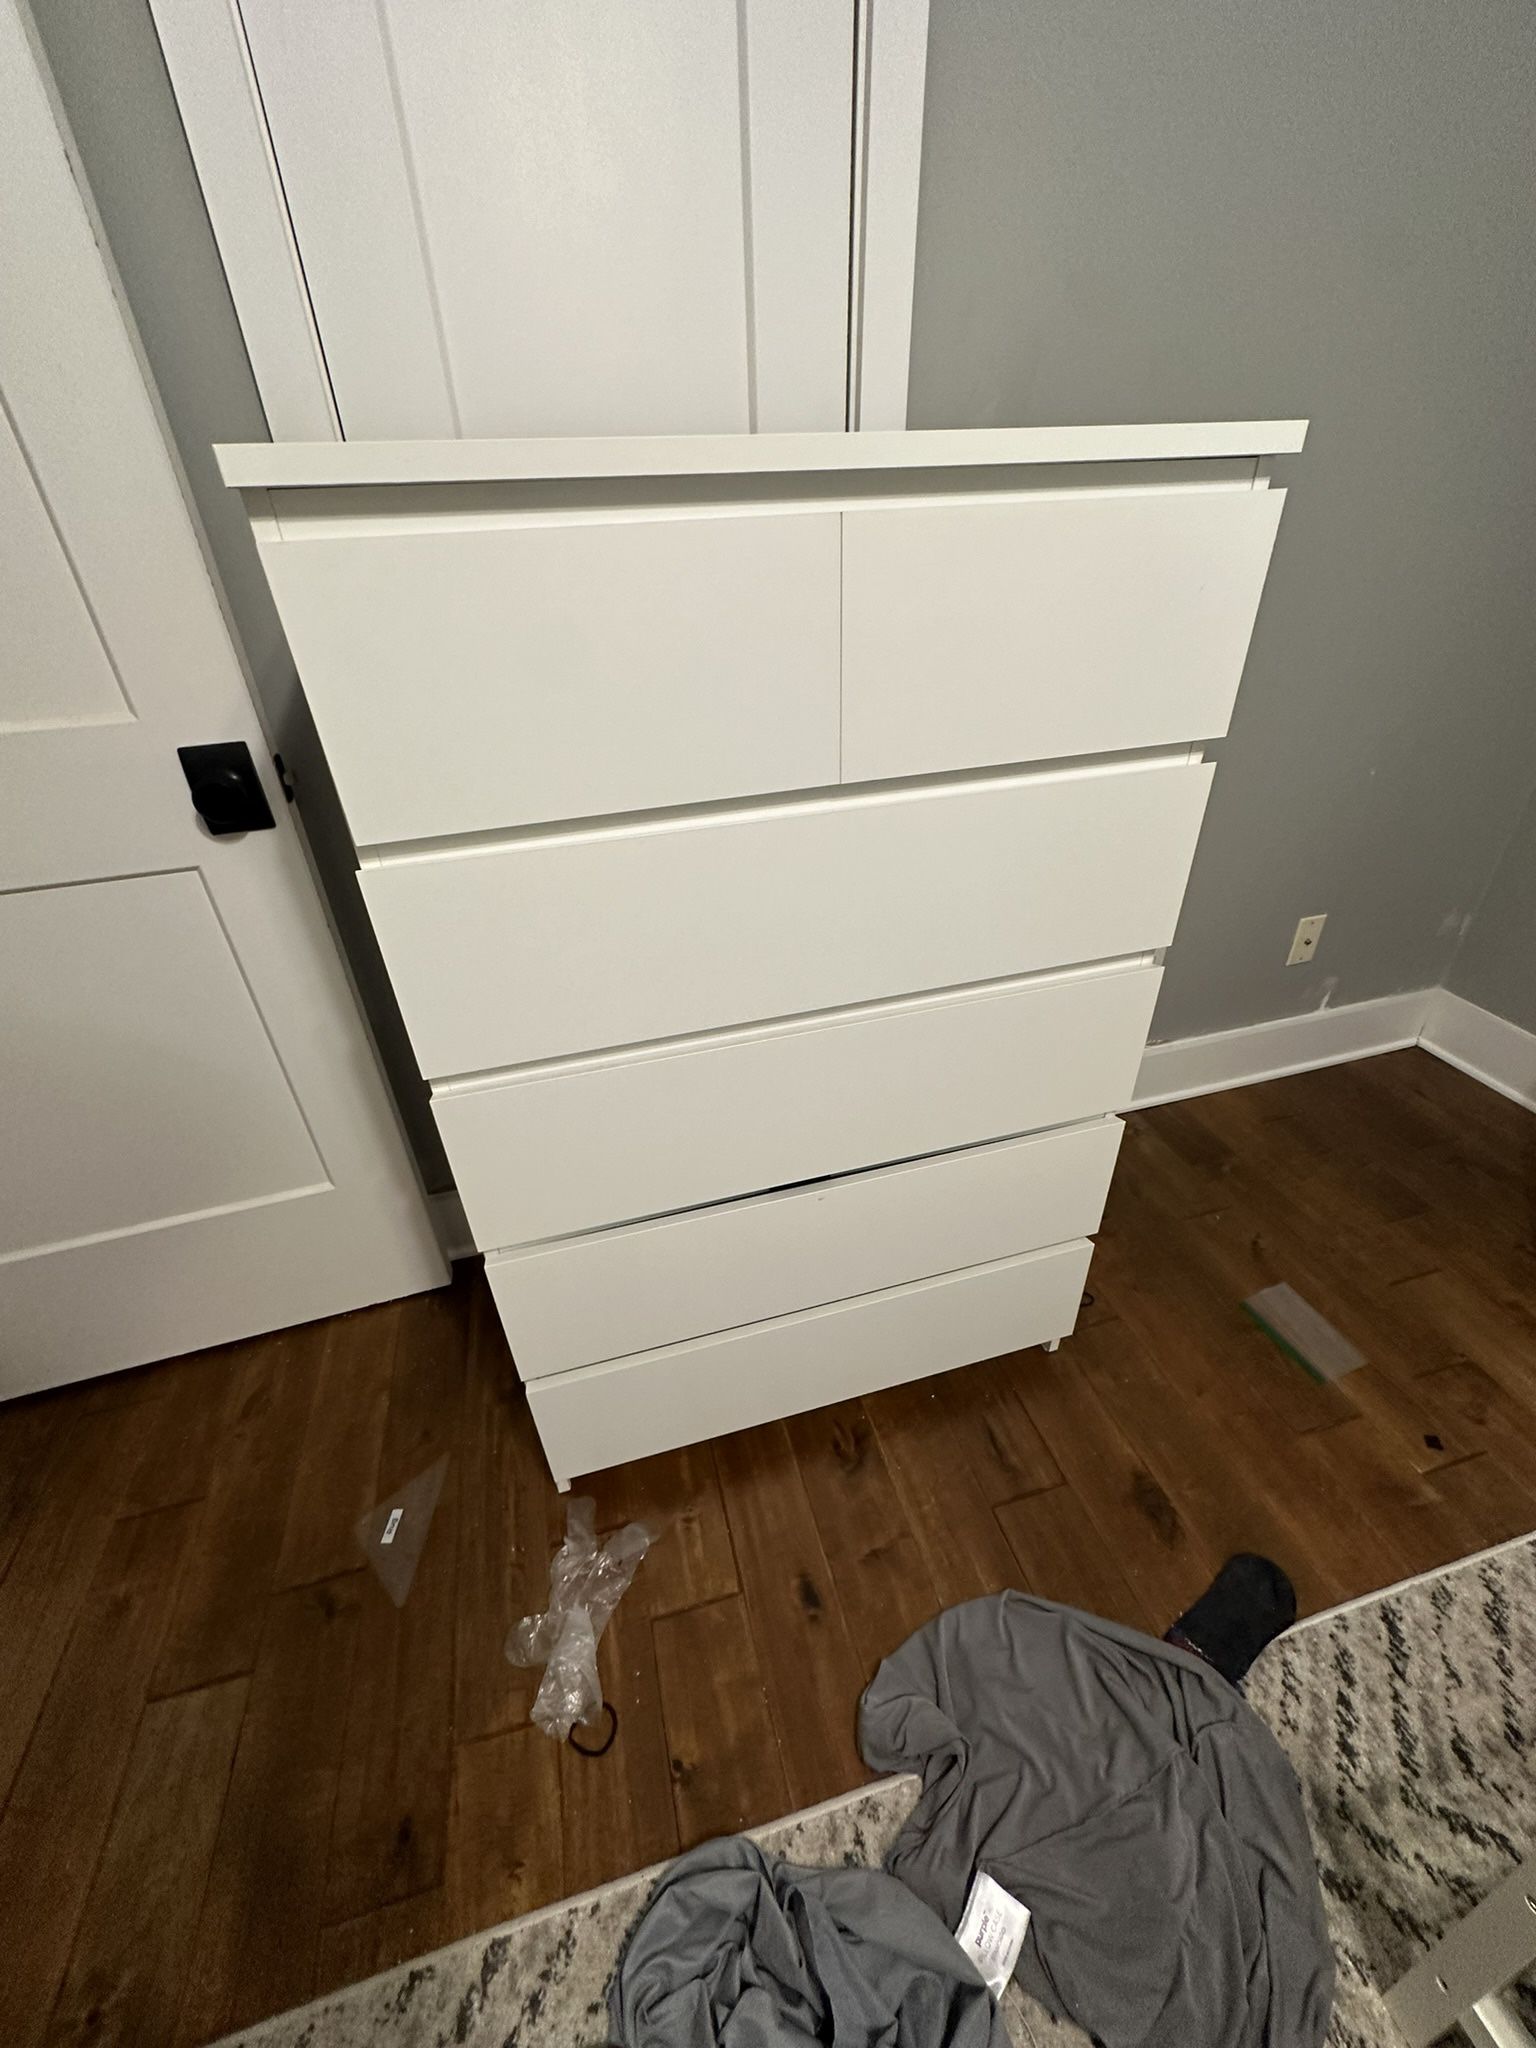 IKEA Dresser